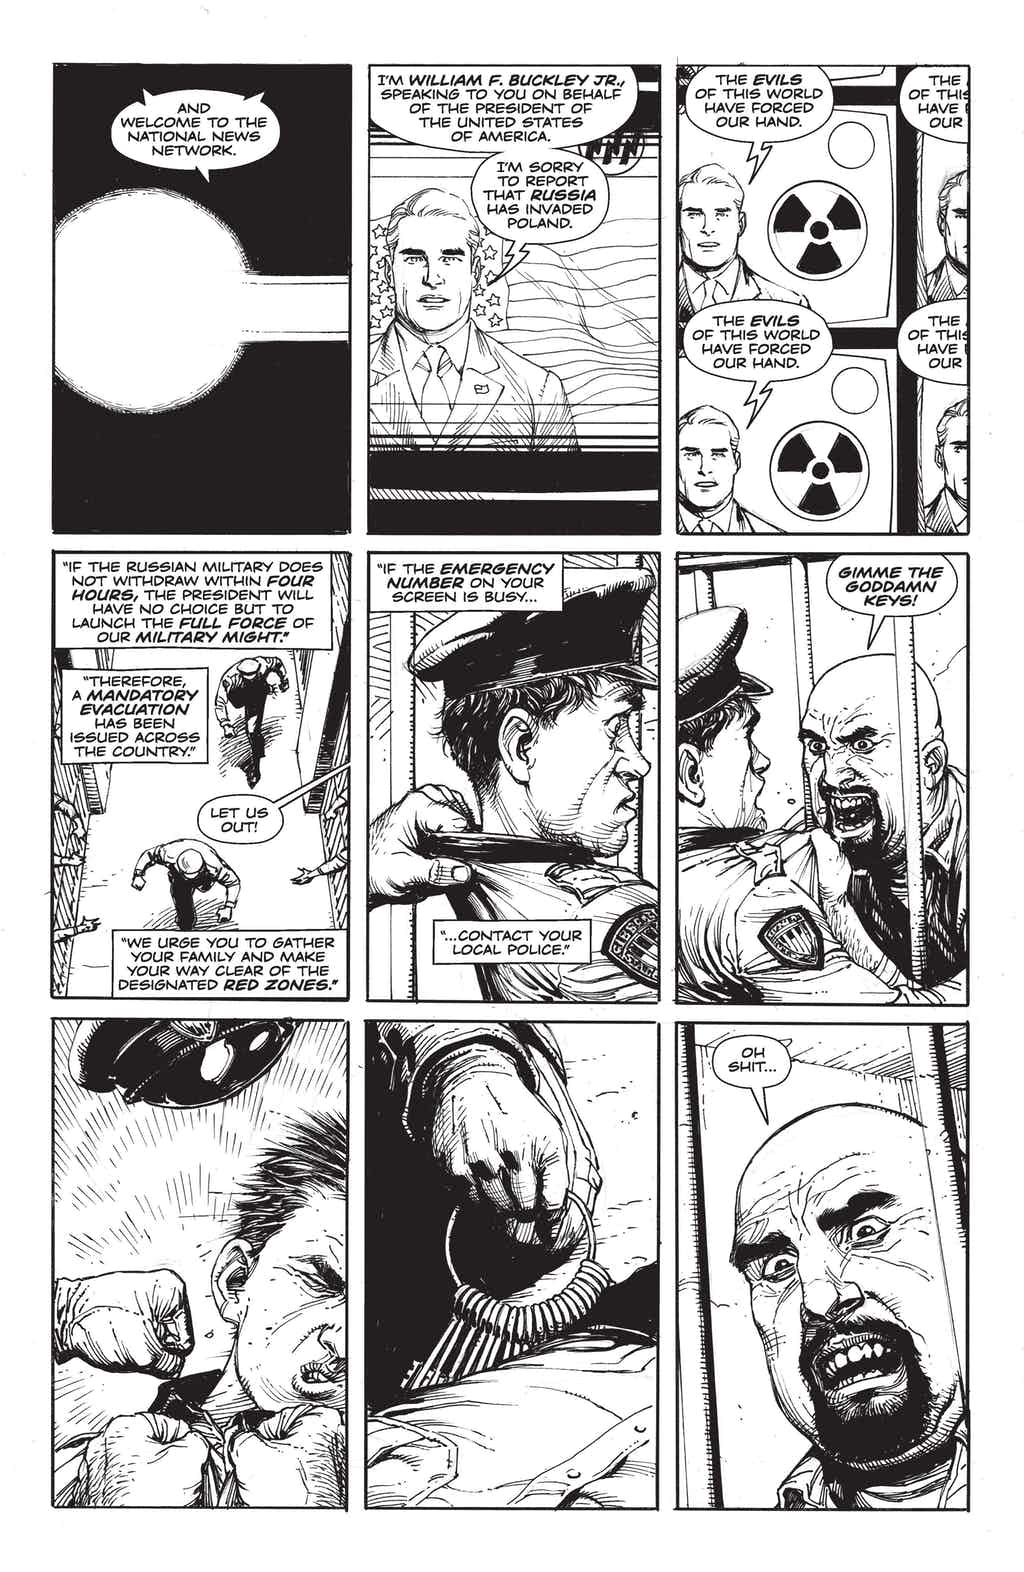 確定是 Watchmen 守護者的續集！！！《毀滅日時鐘》漫畫第 1 回搶先看